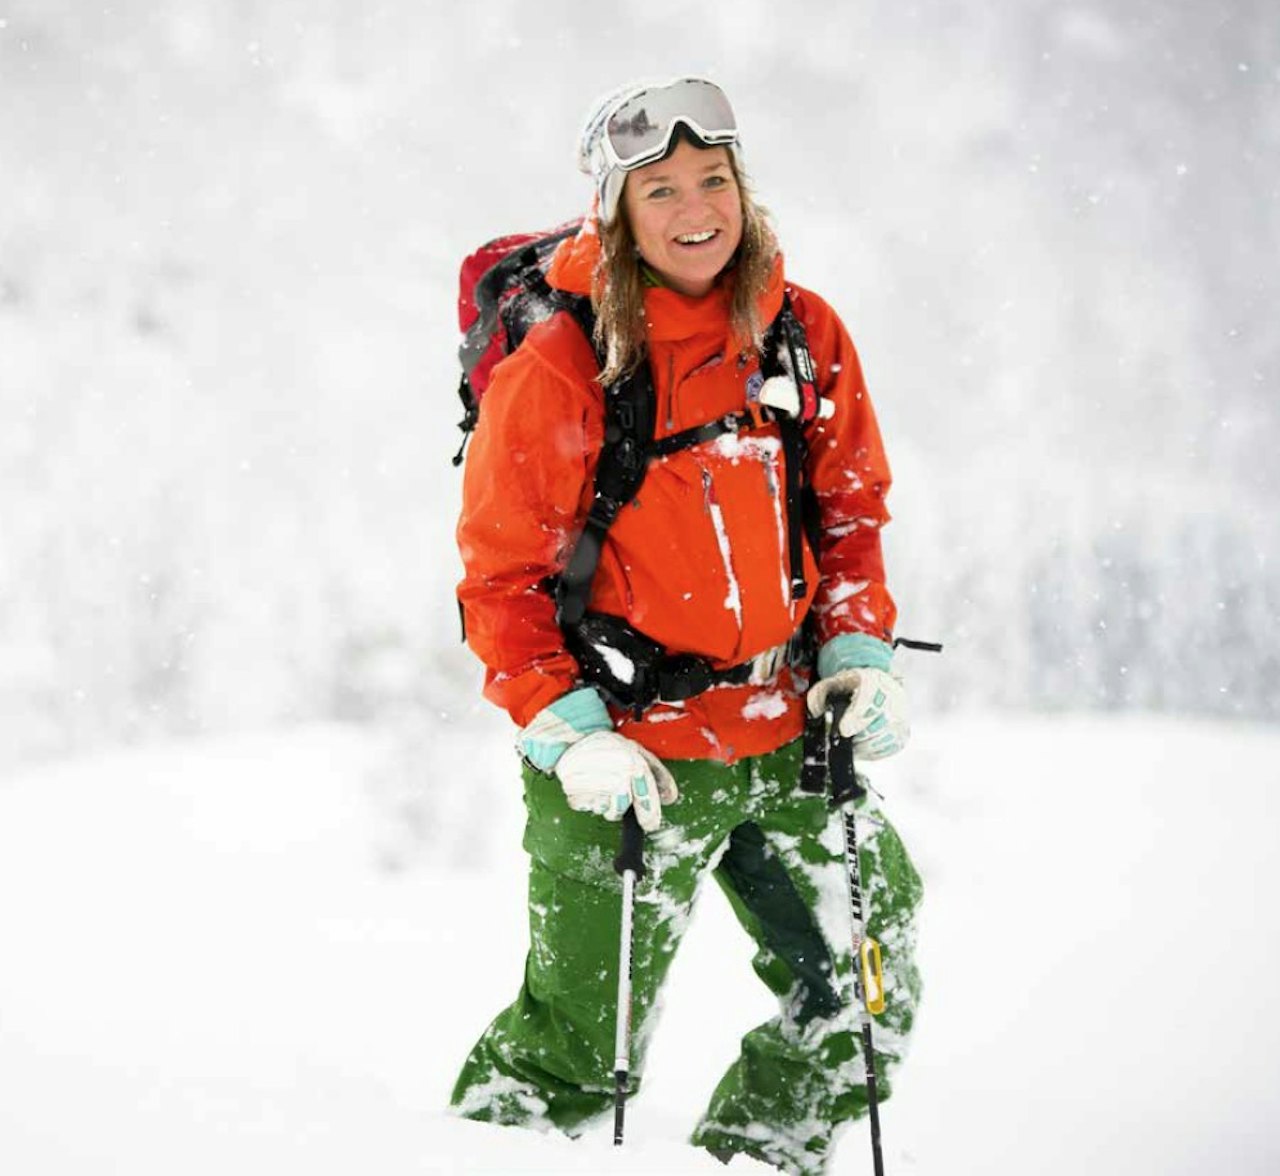 DRØMMEDAG: På jobb får Marit Svarstad Andresen brukt skiutstyret stadig vekk. Foto: Bård Basberg